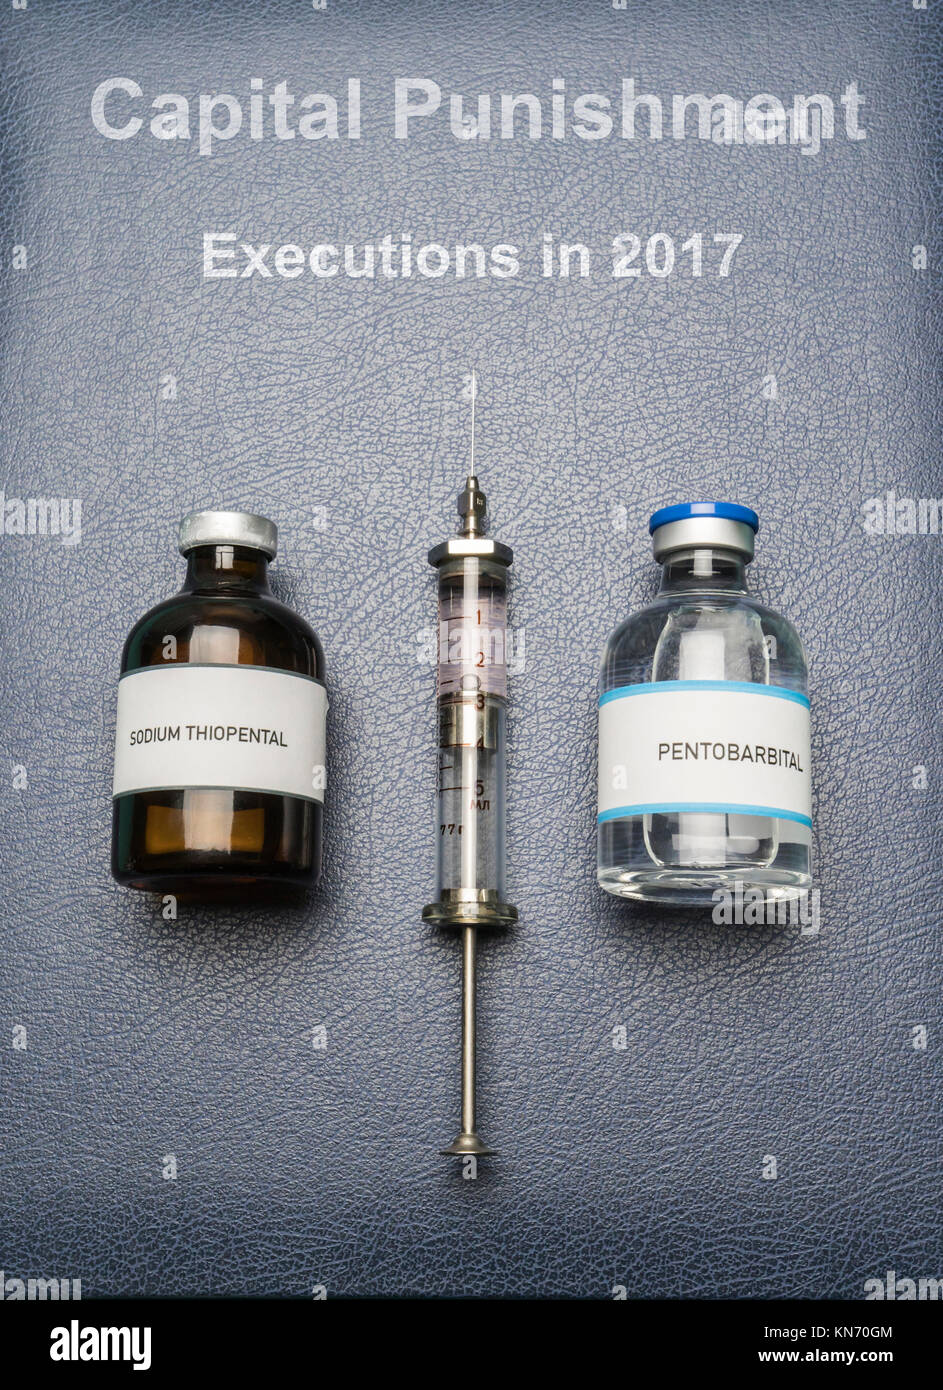 Siringa vintage e farmaci utilizzati nella iniezione letale su un libro di pena capitale esecuzioni nel 2017, composizione digitale, immagine concettuale Foto Stock